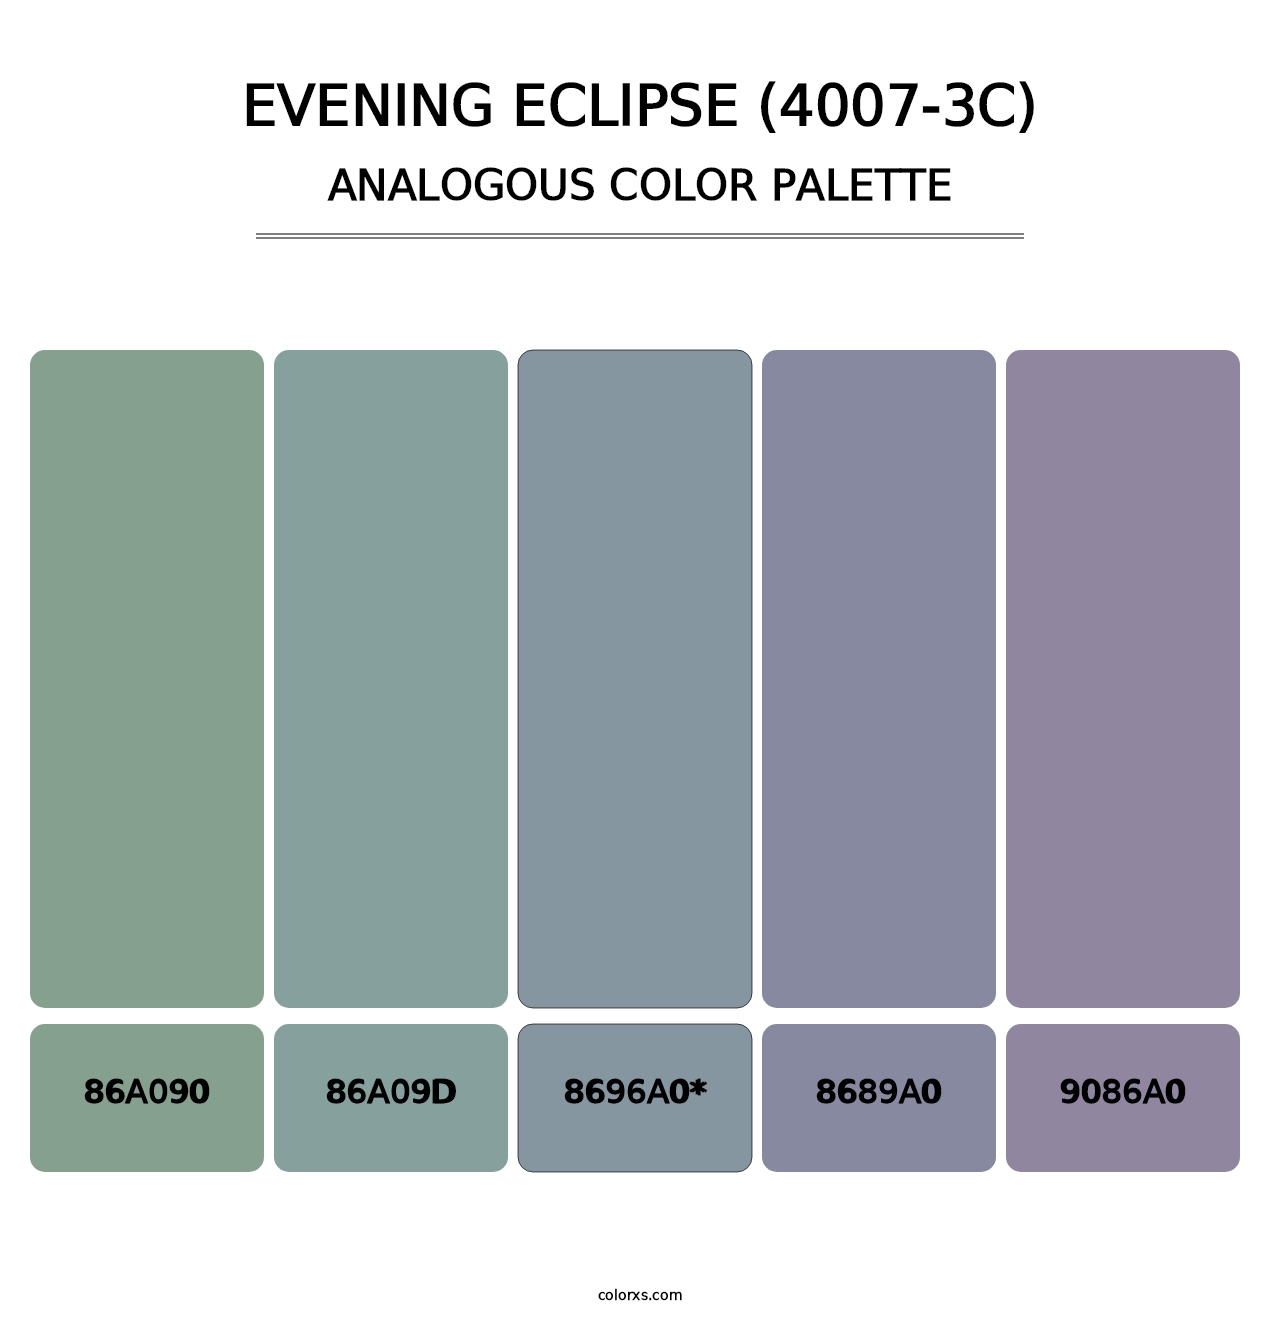 Evening Eclipse (4007-3C) - Analogous Color Palette